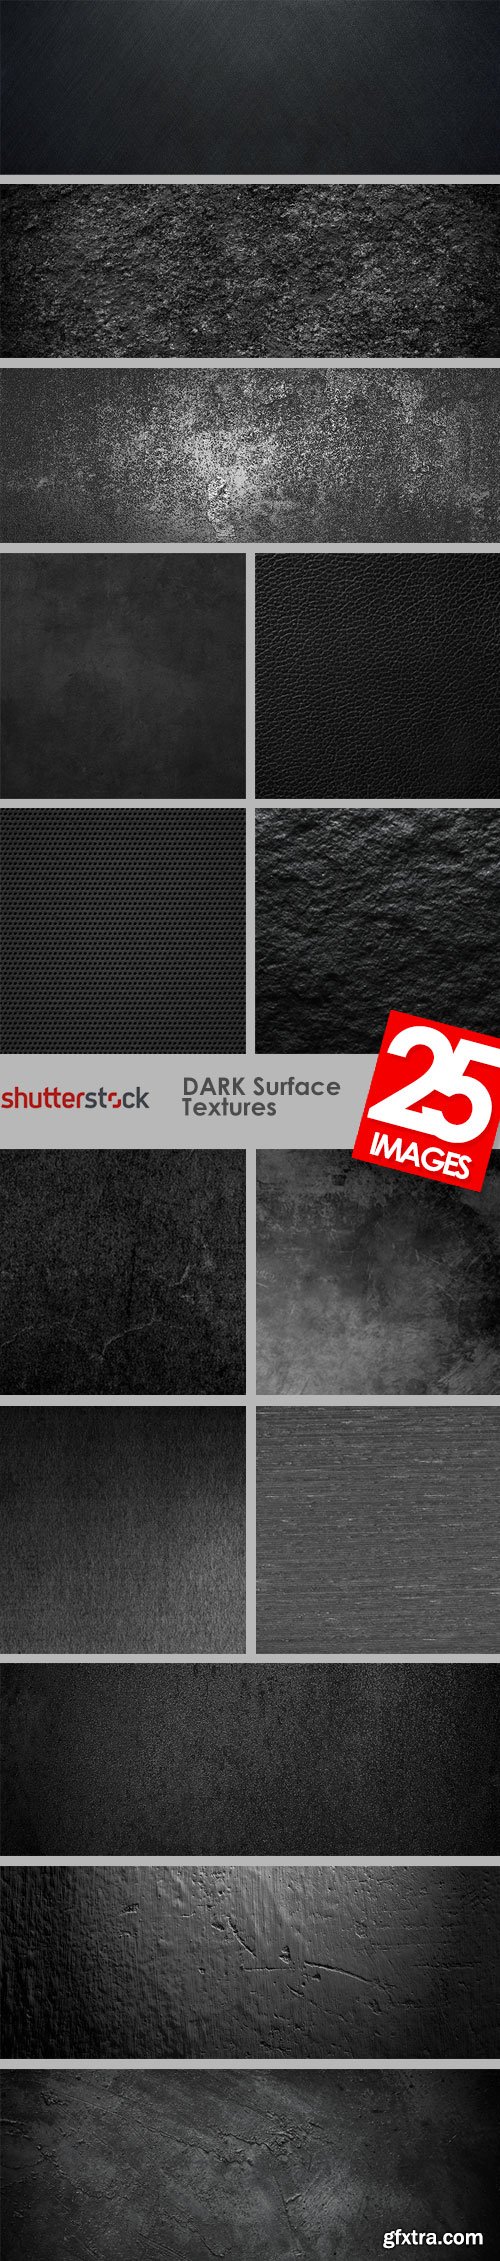 Dark Surface Textures 25xJPG